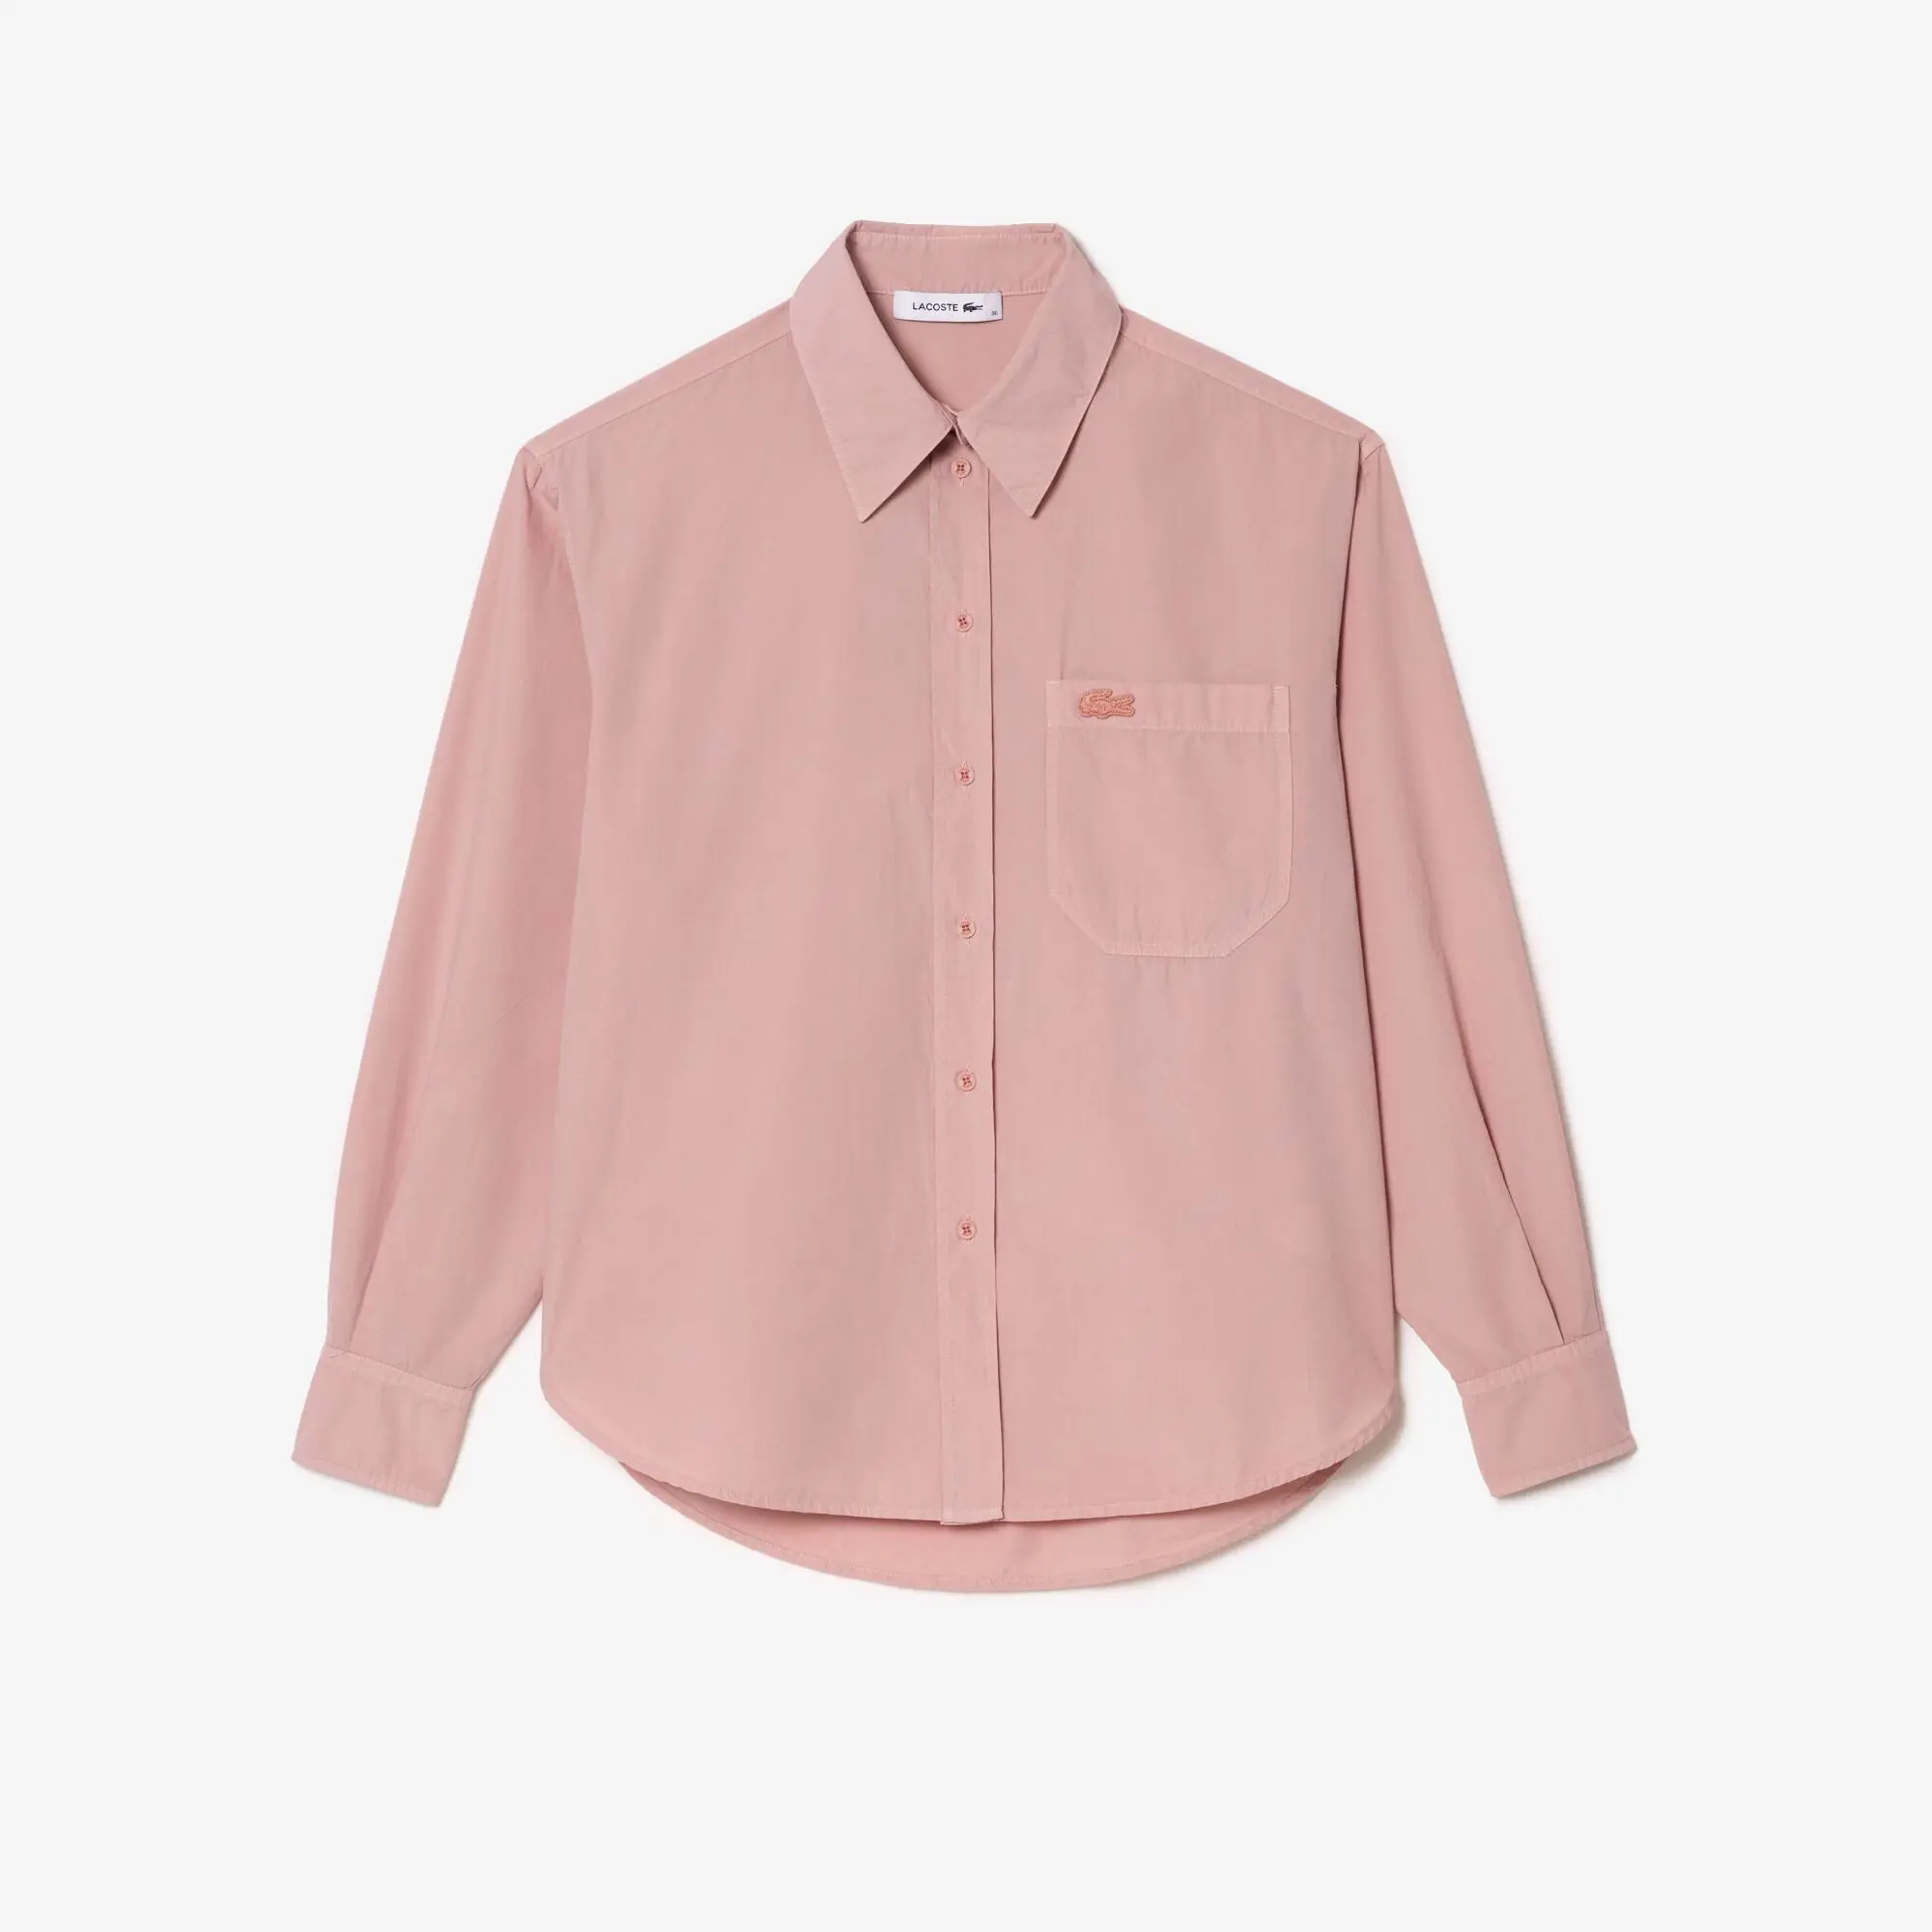 Lacoste Women’s Lacoste Oversize Cotton Poplin Shirt. 2